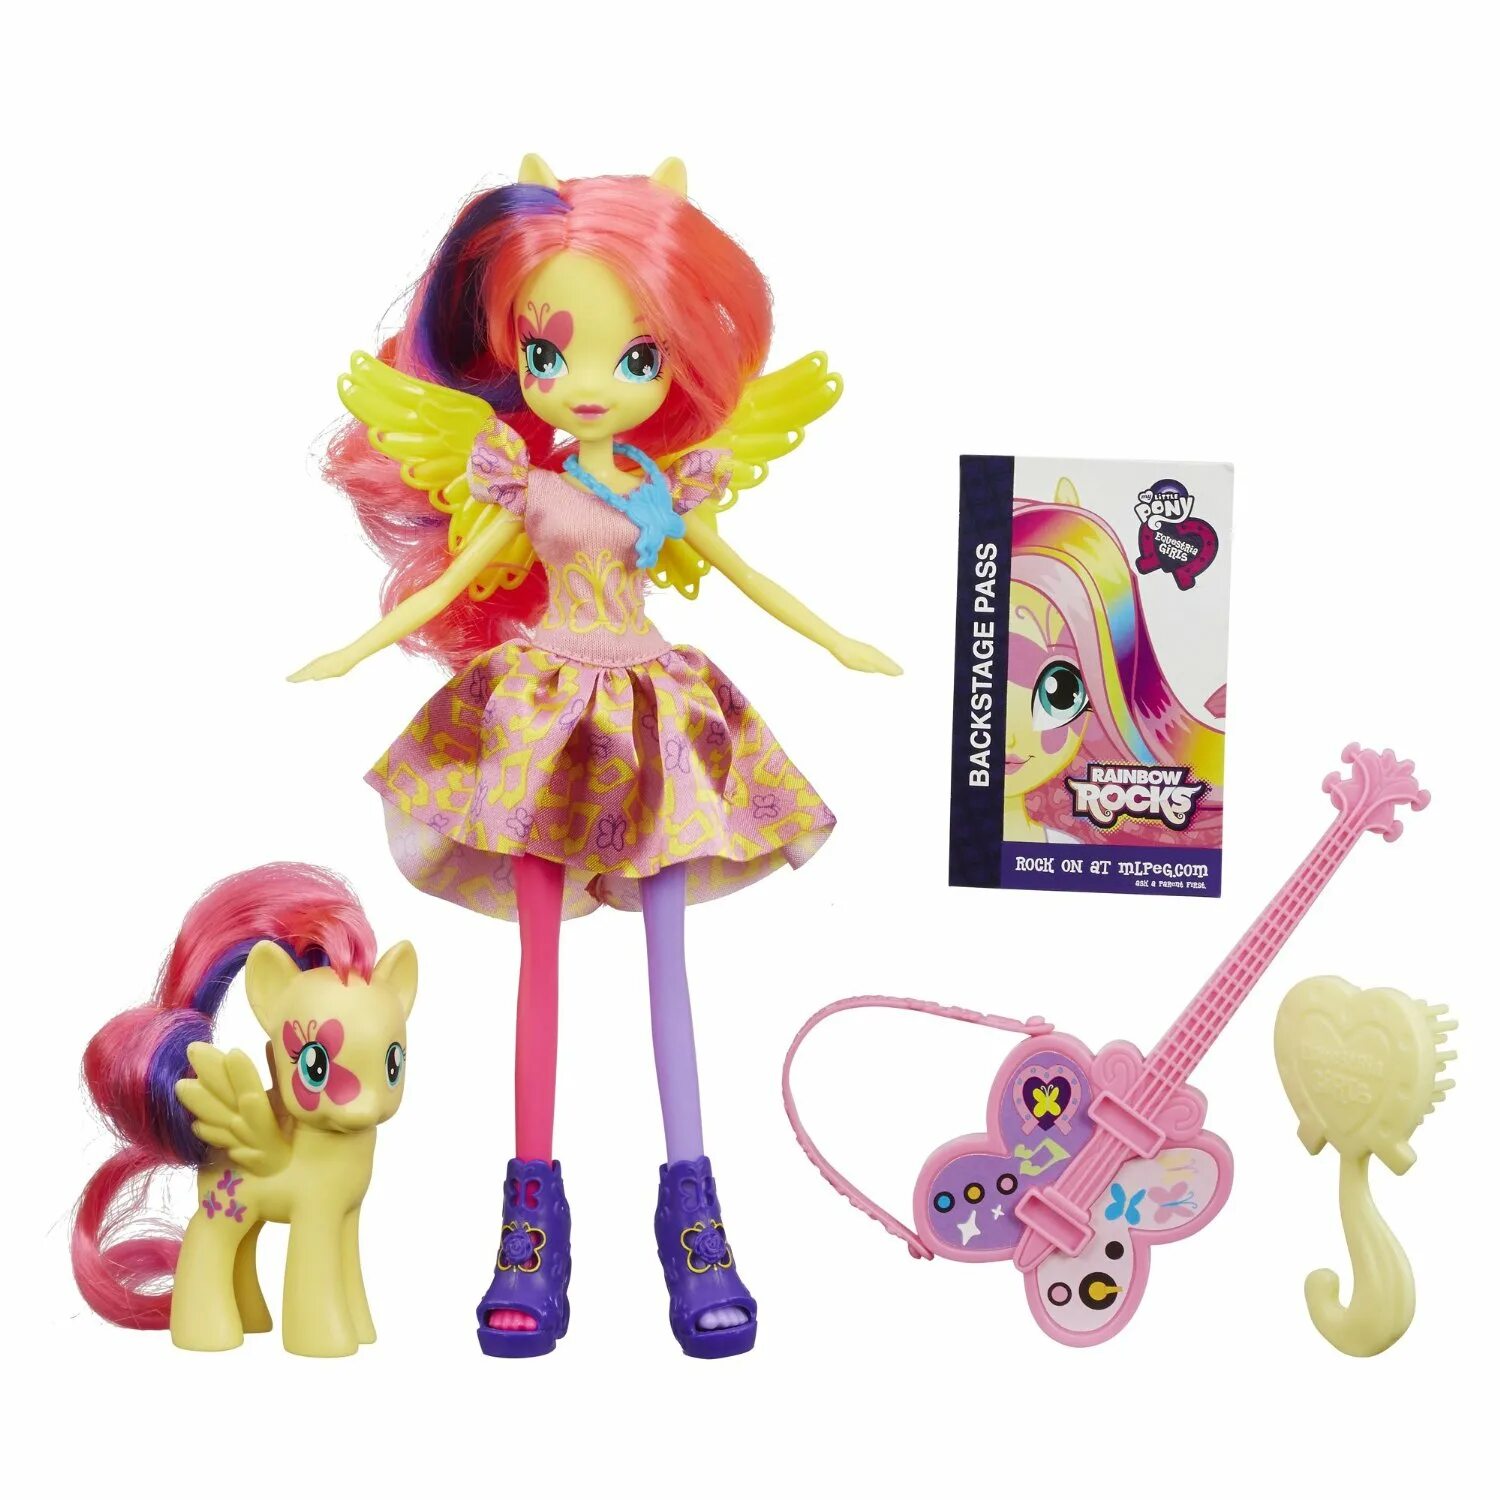 Флаттершай Rainbow Rocks кукла. Кукла Fluttershy Hasbro Equestria girls. Эквестрия герлз Rainbow Rocks куклы. My little Pony куклы флатер Шай.